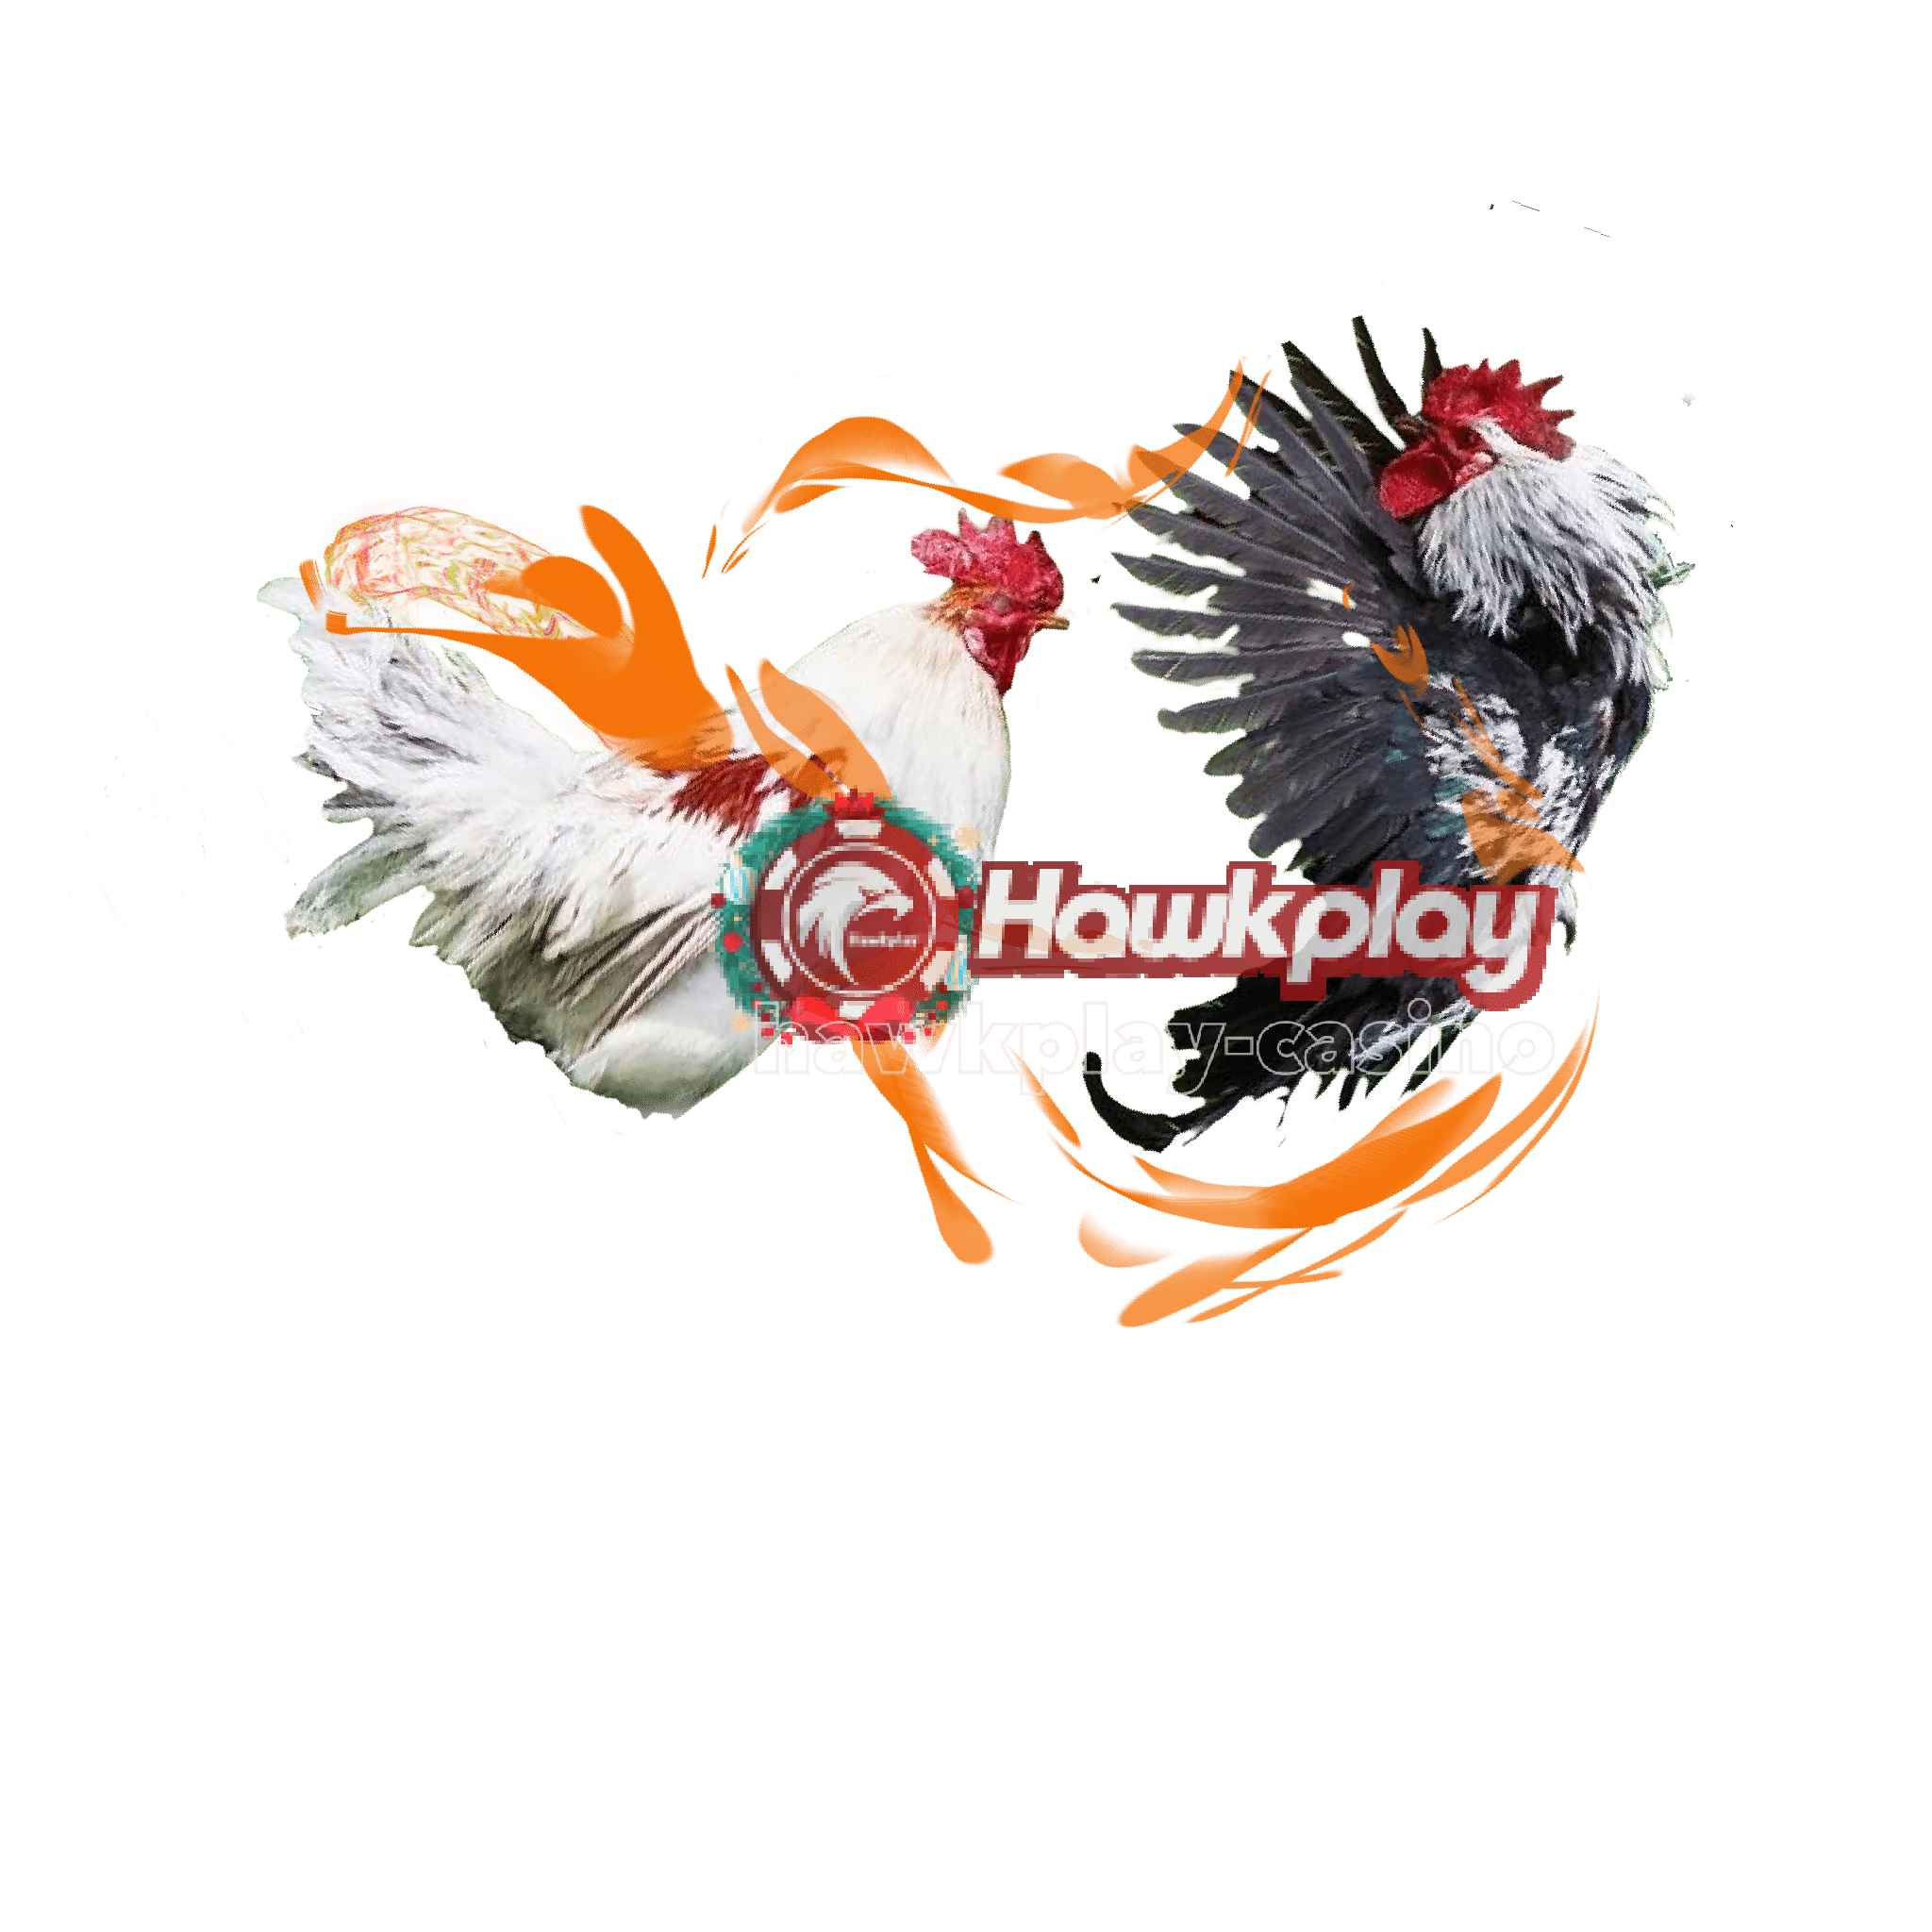 Hawkplay online casino cock fighting